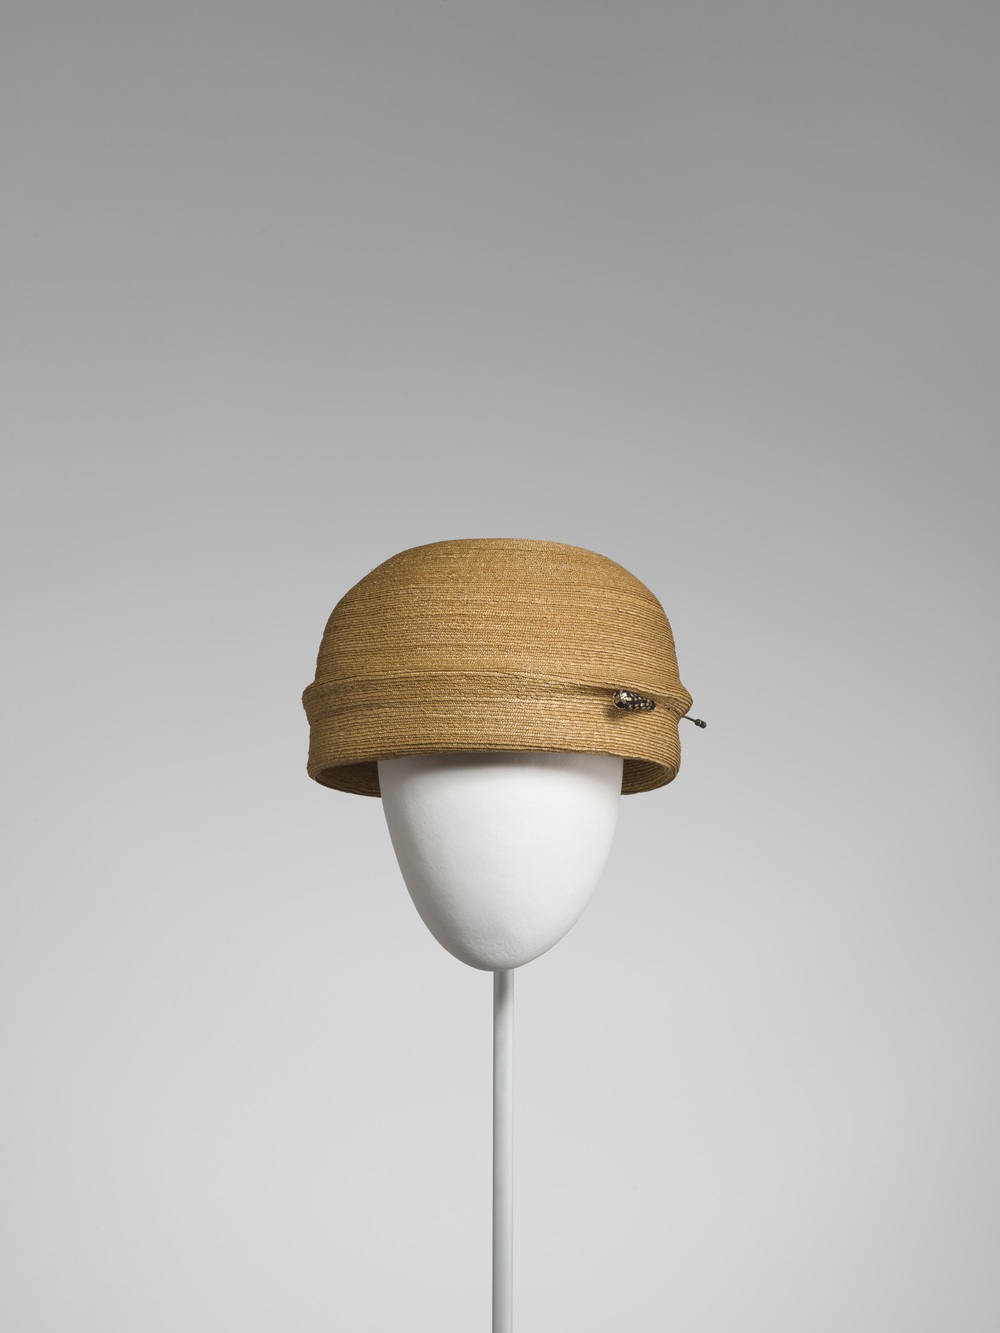 Uno de los sombreros de la exposición / Foto: Balenciaga